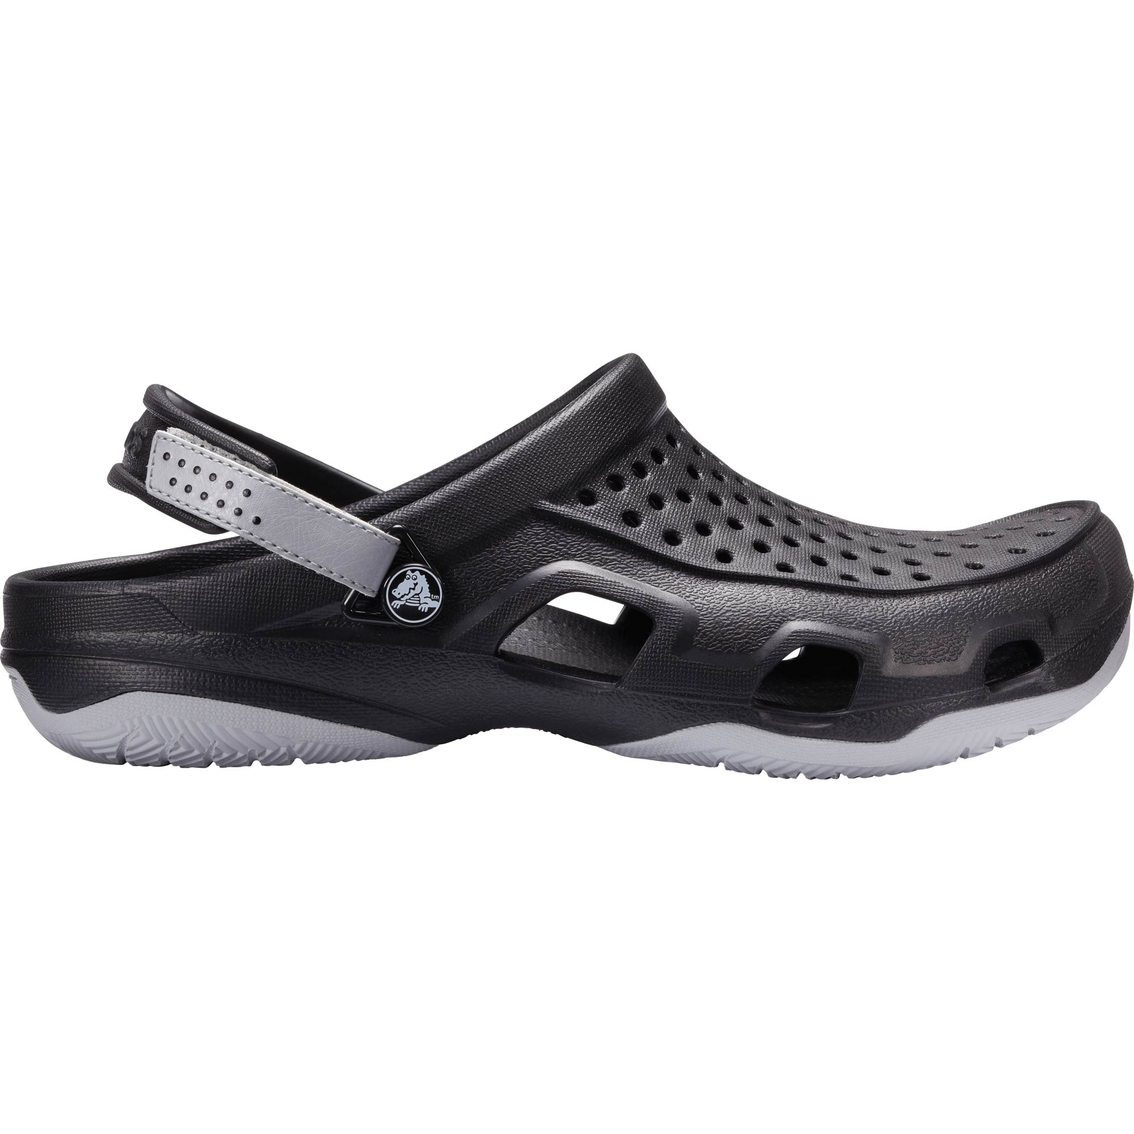 Crocs Men's Swiftwater Deck Clogs | Casuals | Shoes | Shop The Exchange